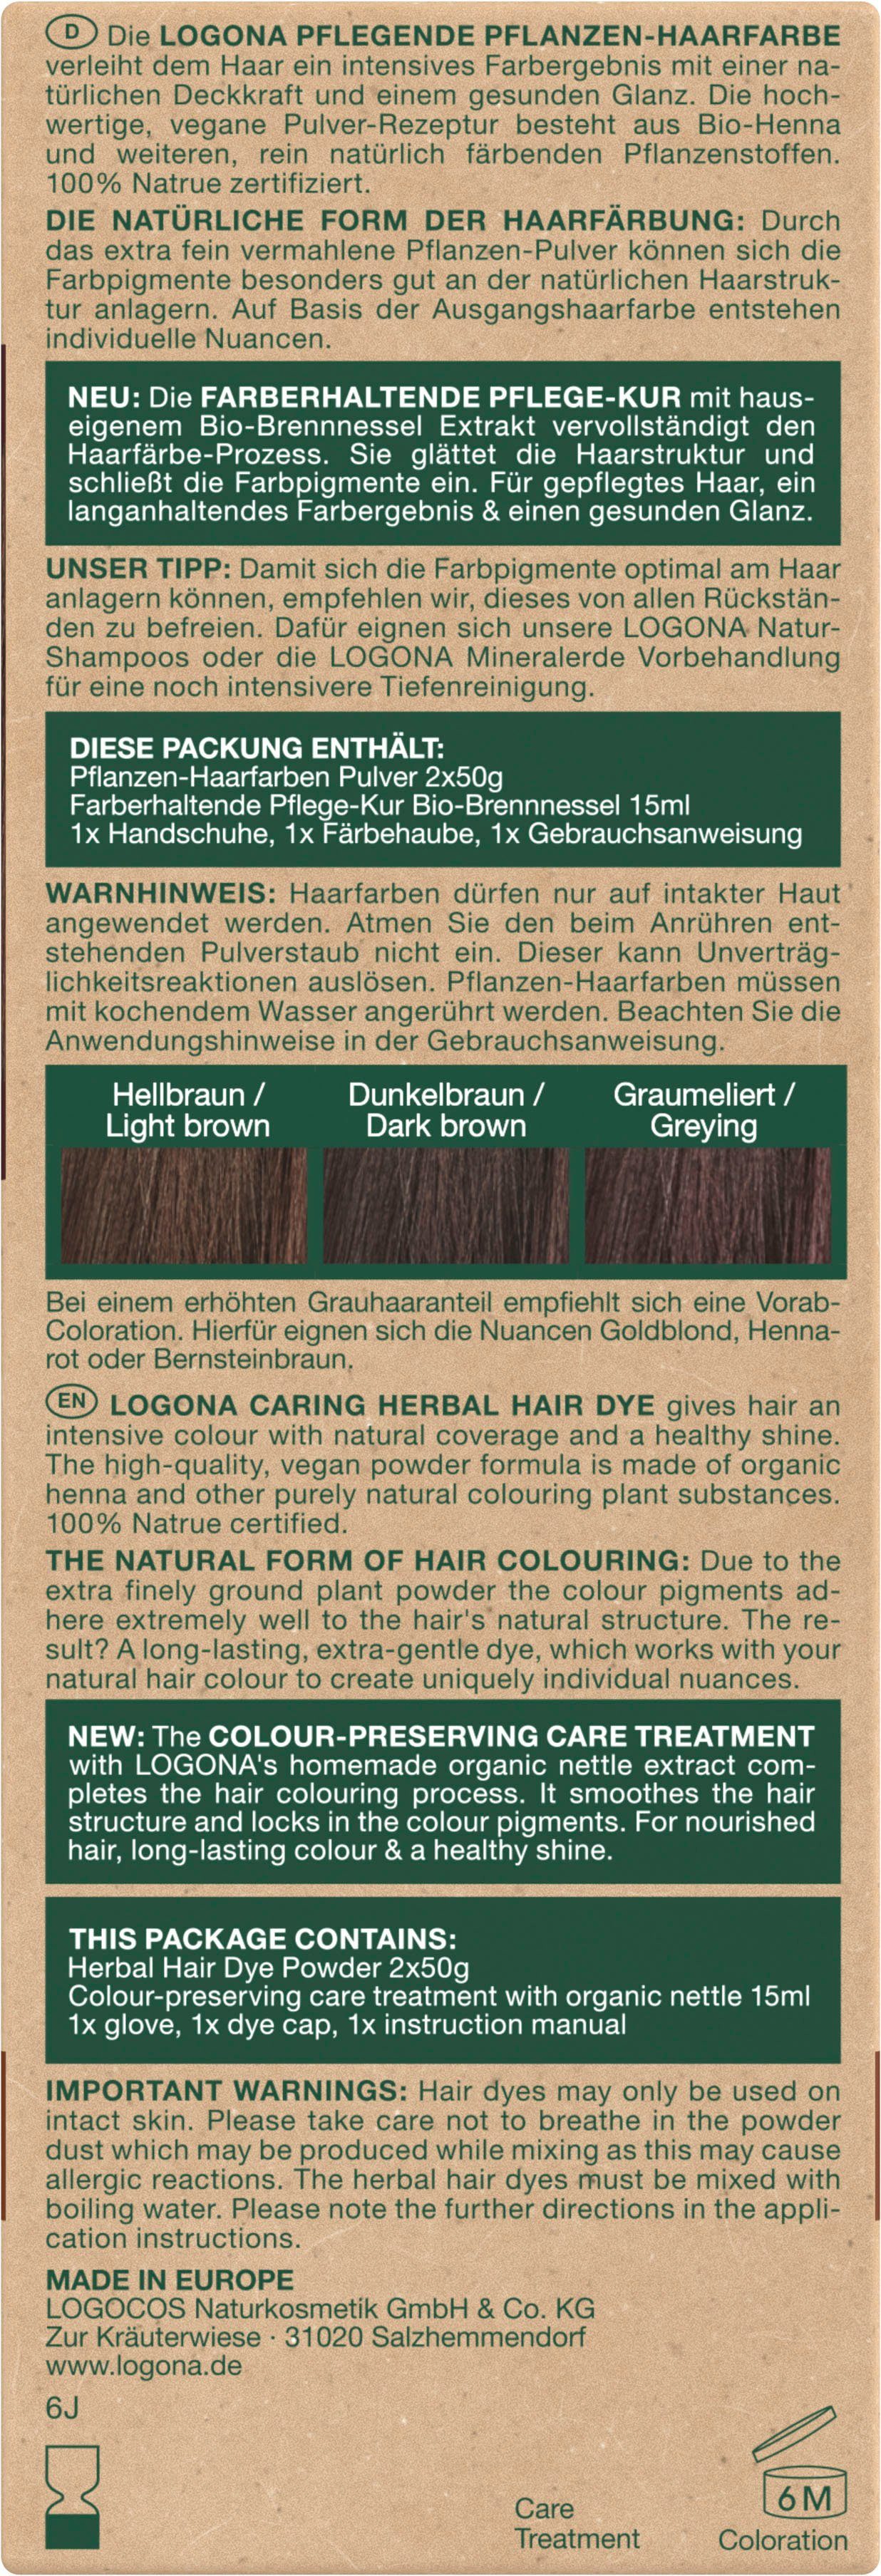 Pulver Pflanzen-Haarfarbe Haarfarbe LOGONA 10 Kaffeebraun